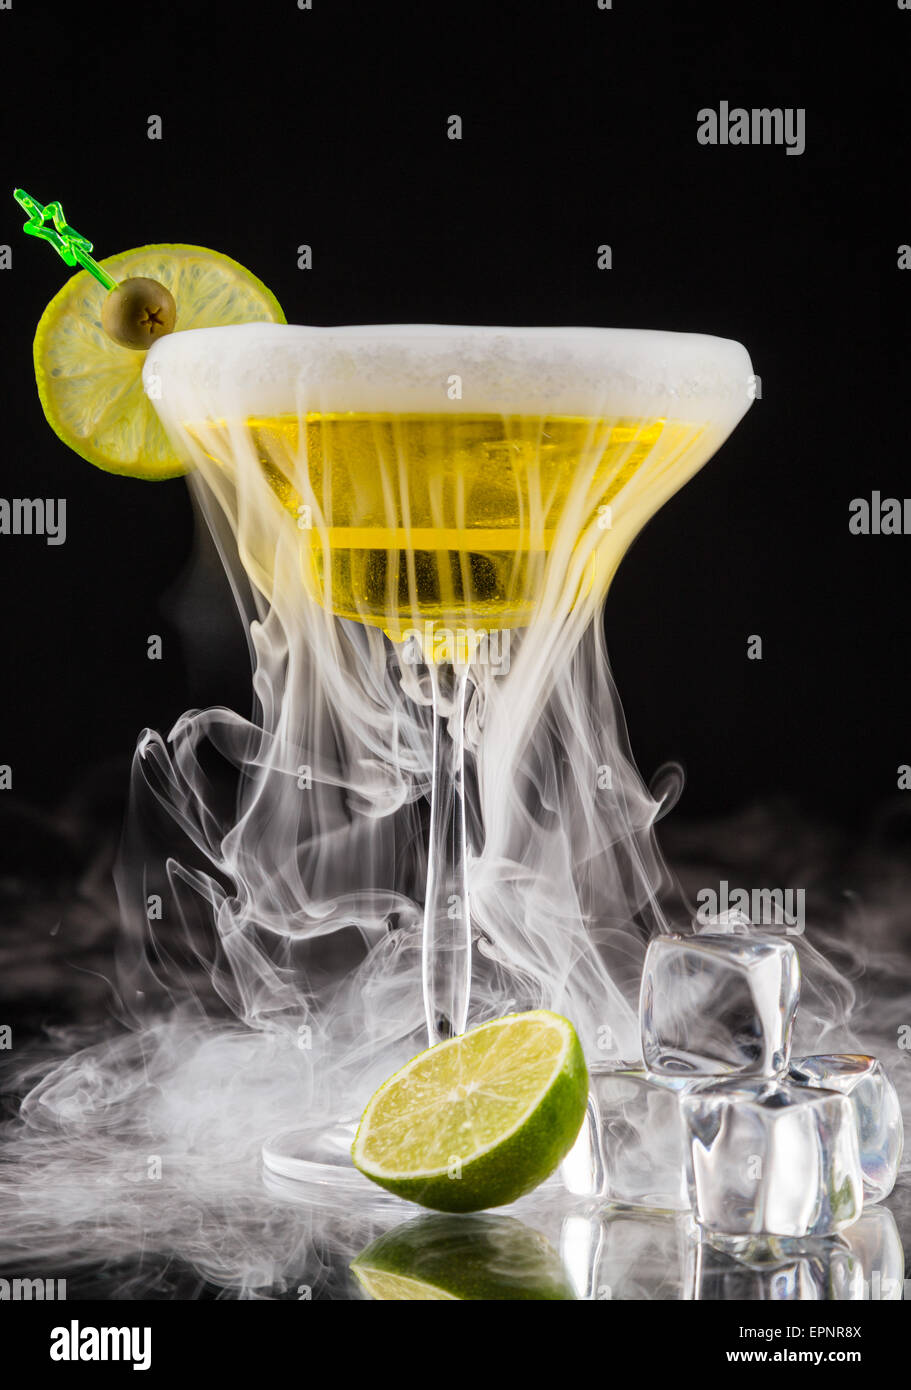 Fumo di ghiaccio secco immagini e fotografie stock ad alta risoluzione -  Alamy